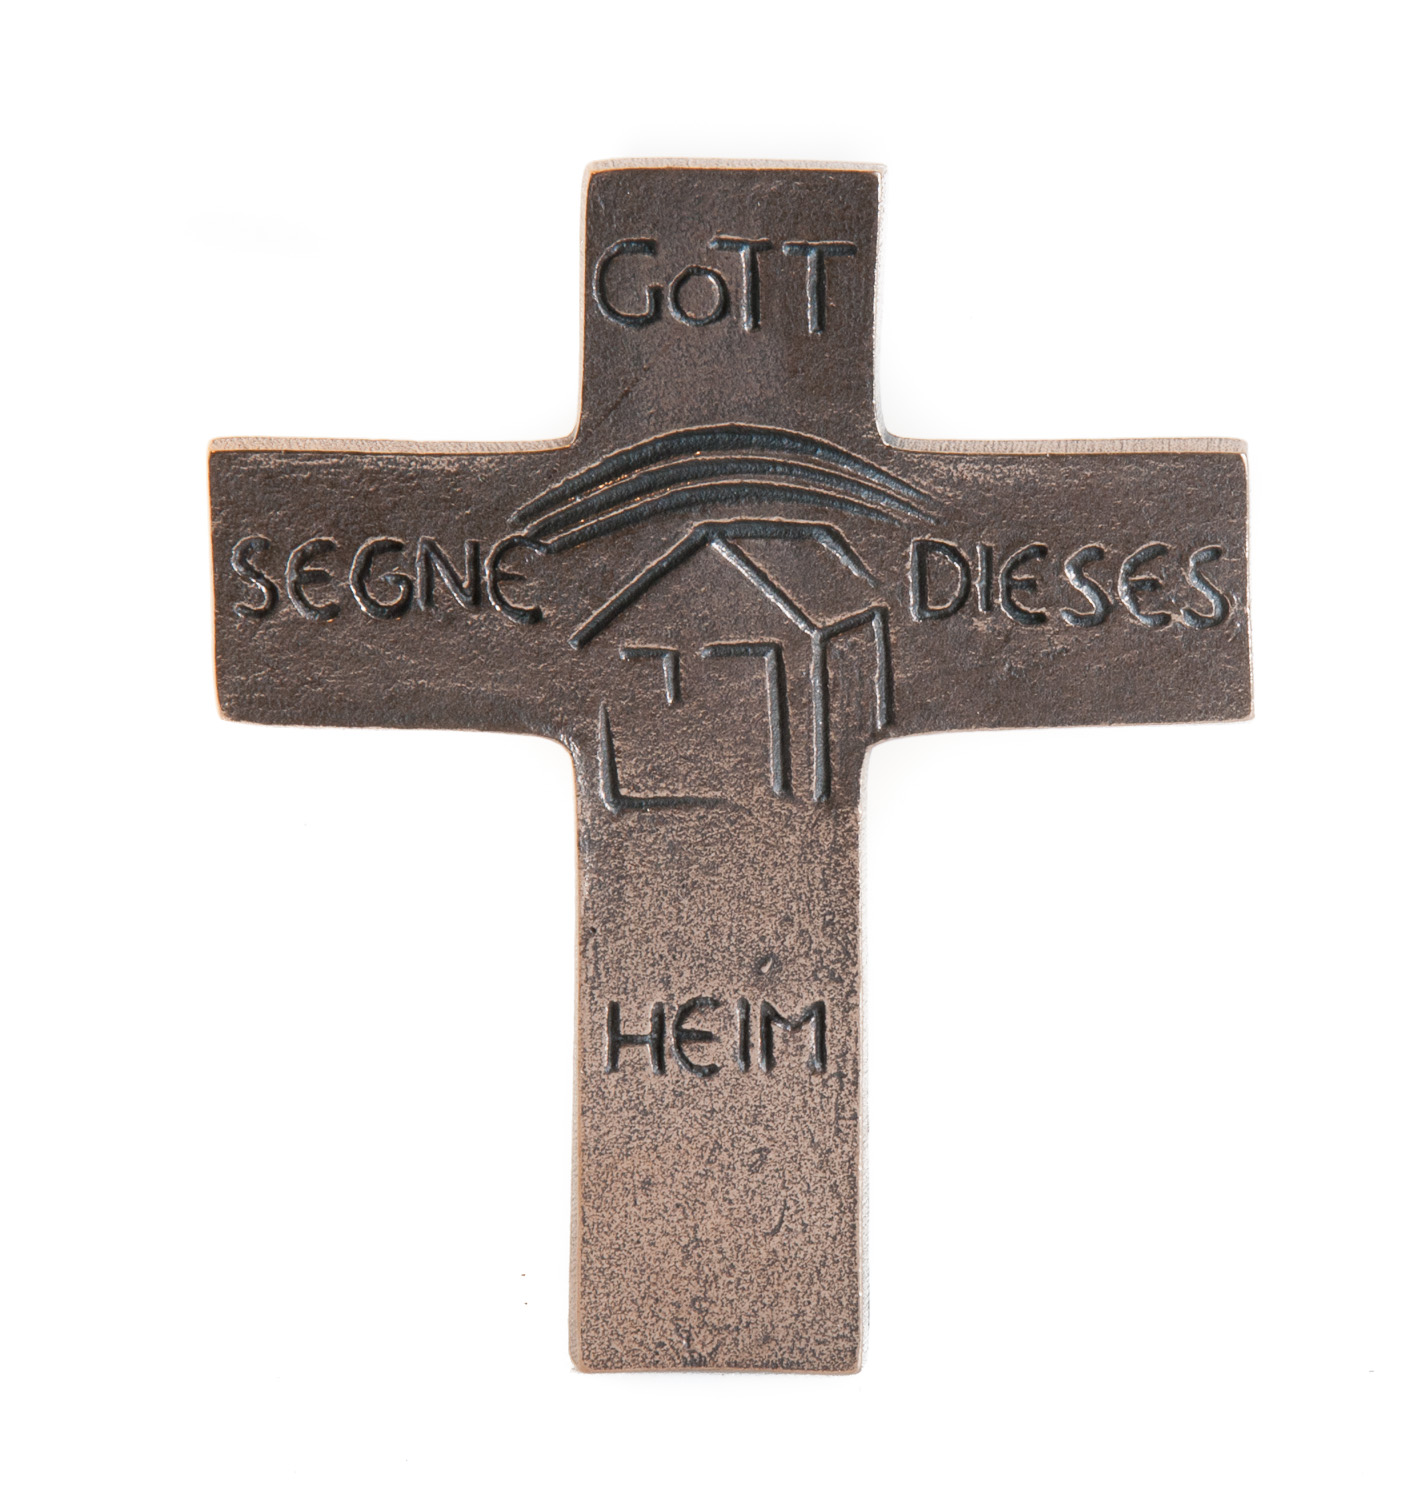 Haussegens - Gott segne dieses Heim  aus Bronze